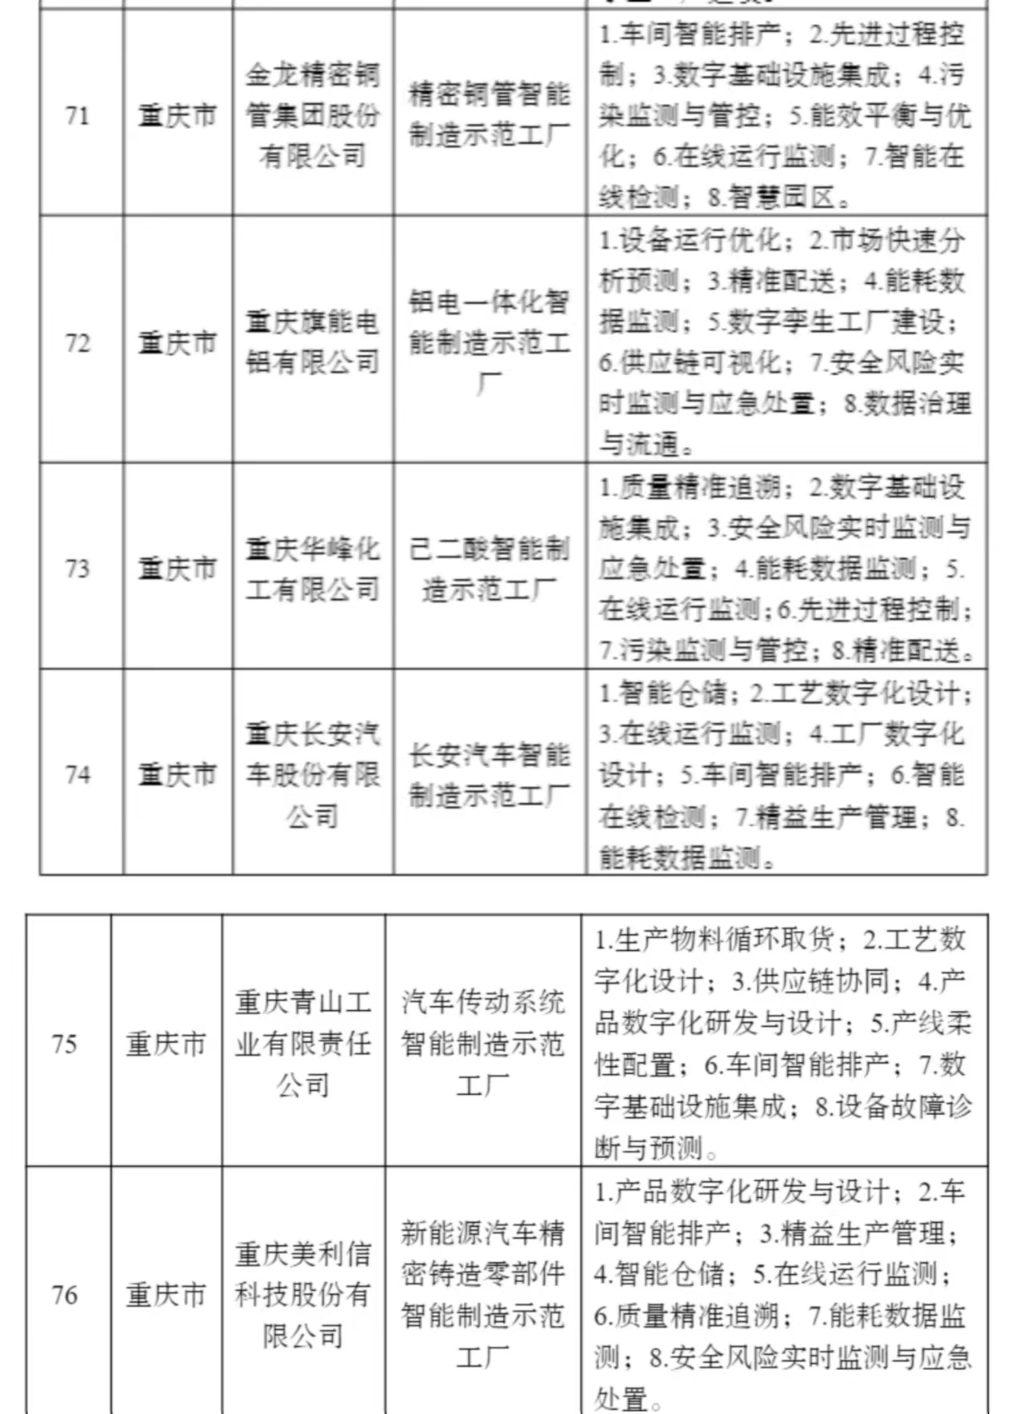 重庆6家企业入围2022年度智能制造示范工厂揭榜单位。工信部官网截图